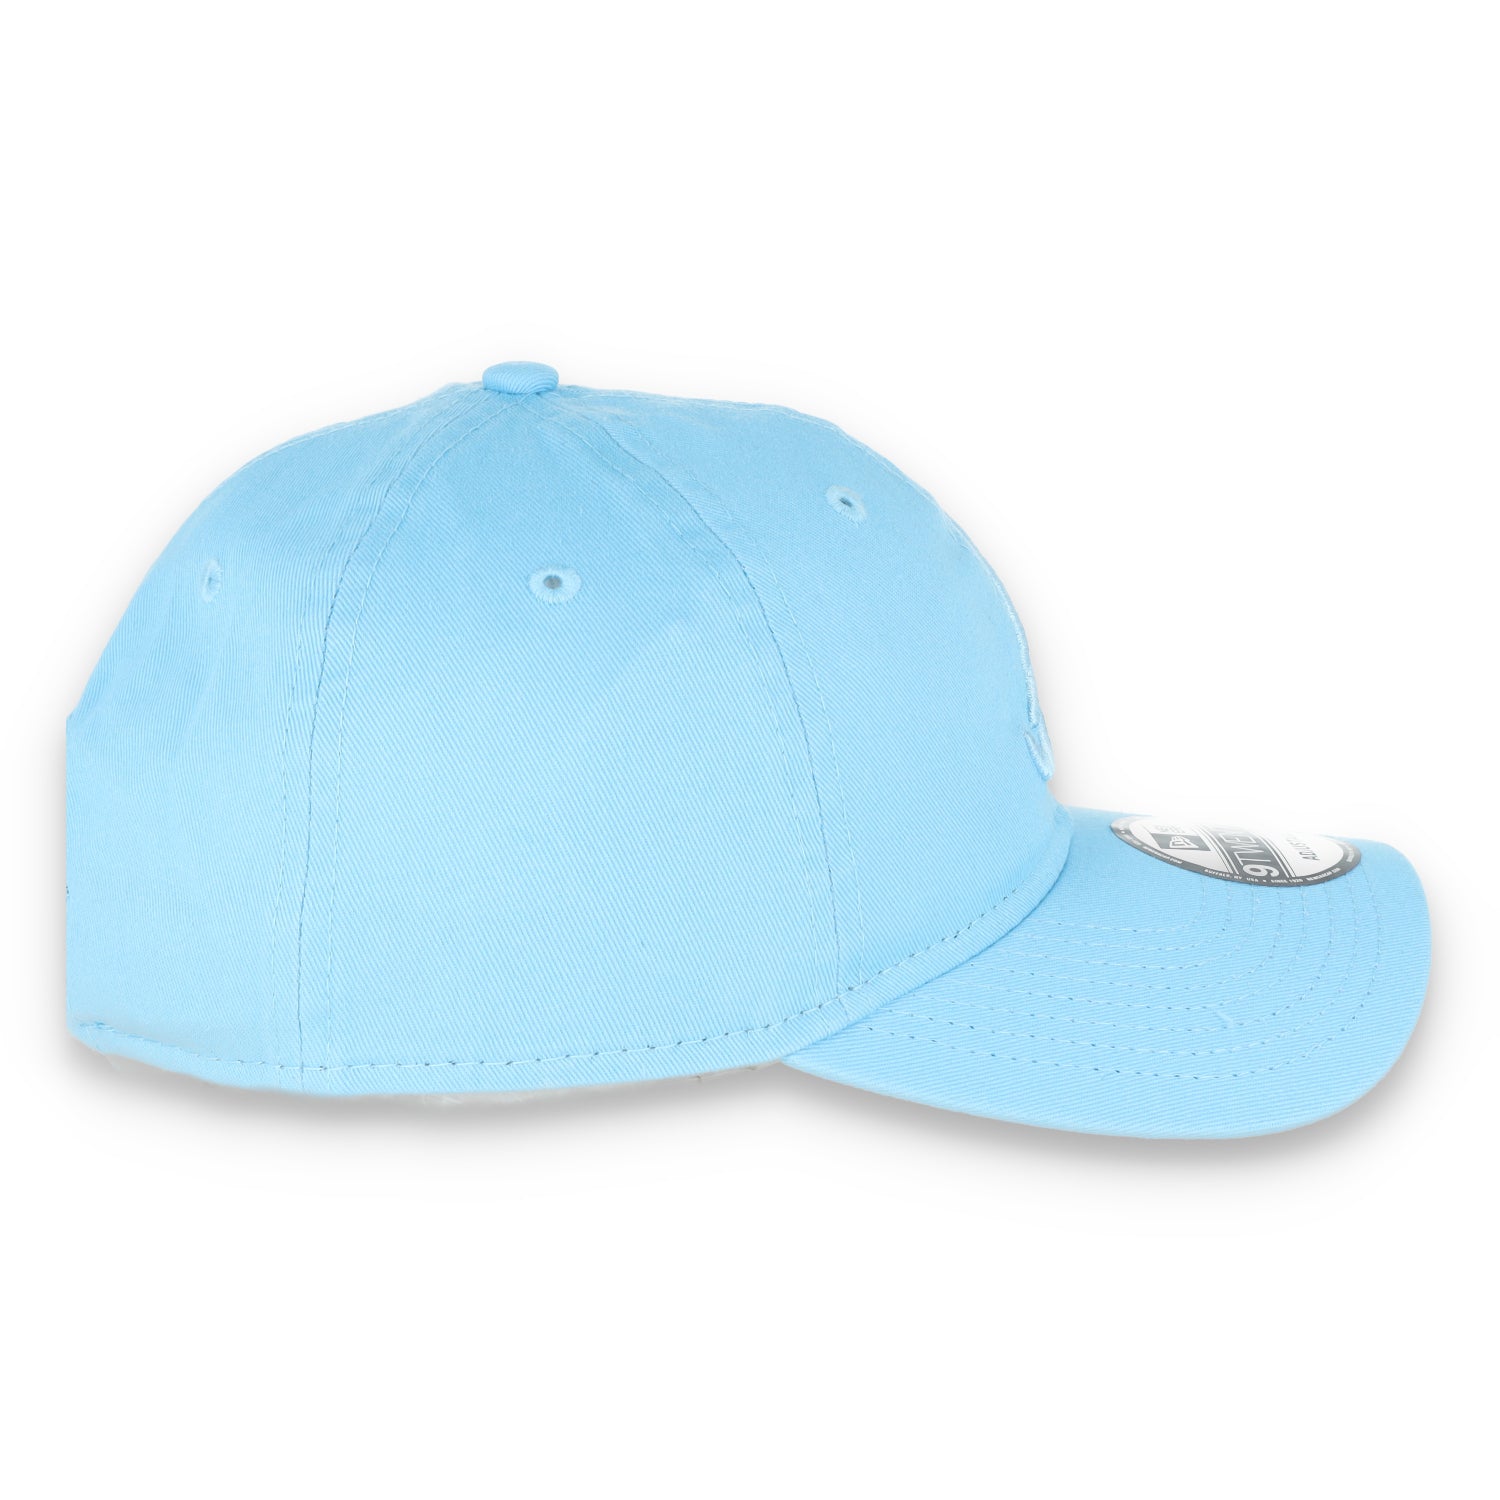 New Era Atlanta Braves Color Pack 9TWENTY Adjustable Hat- Baby Blue